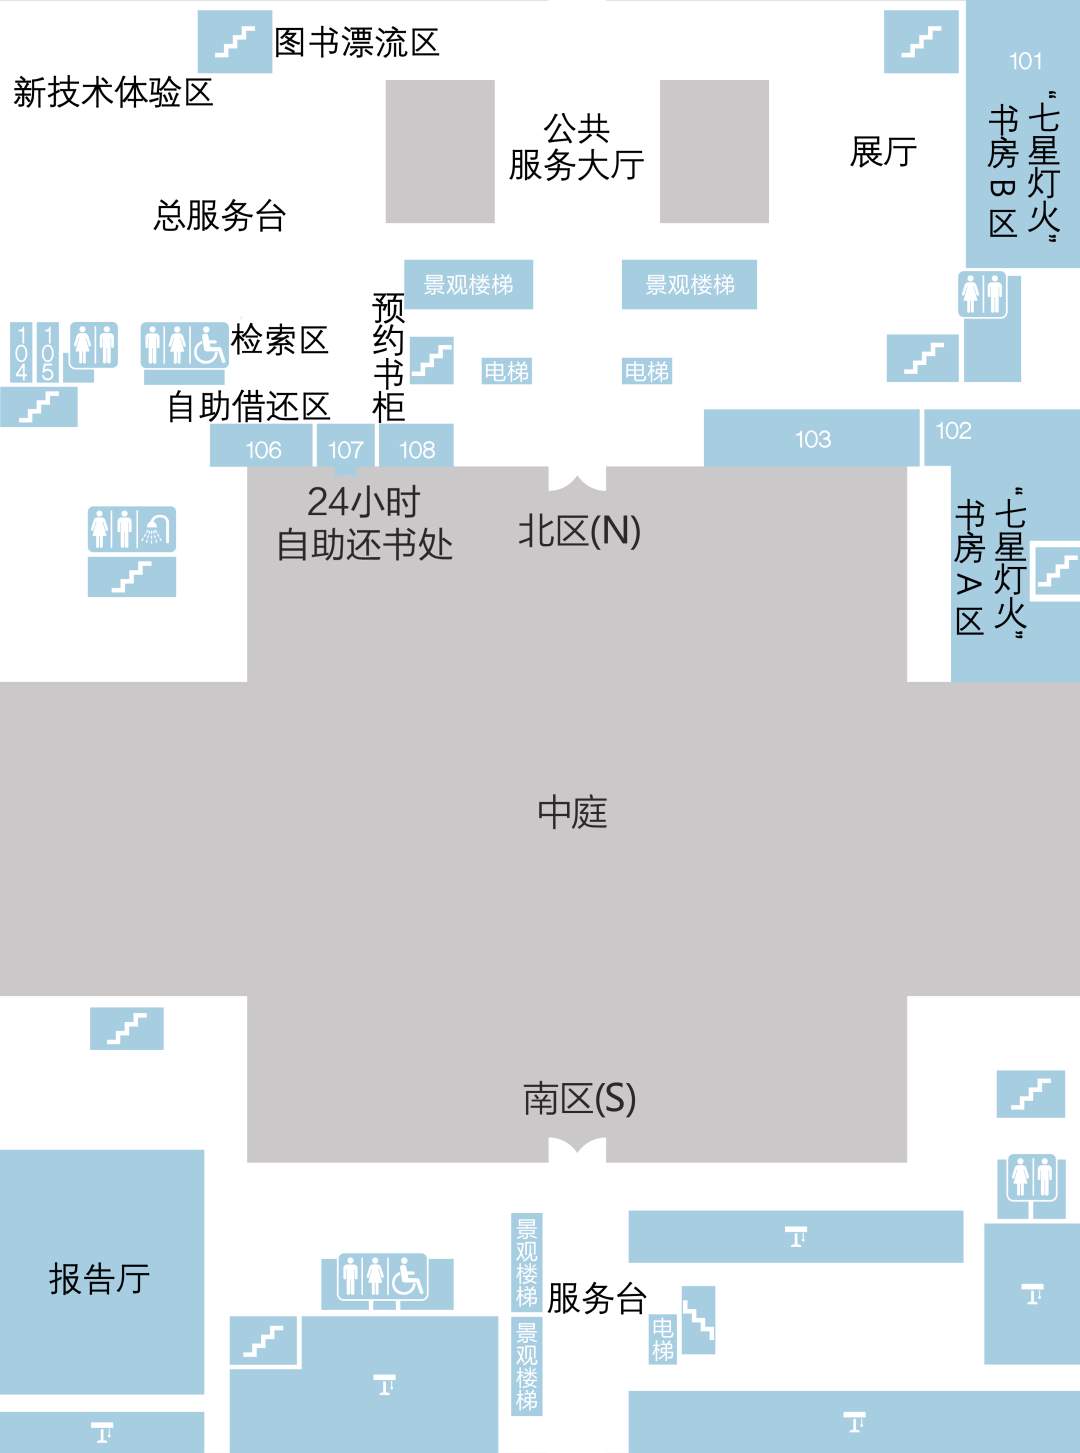 郑东图书馆-资源分布图-1层_压缩.jpg